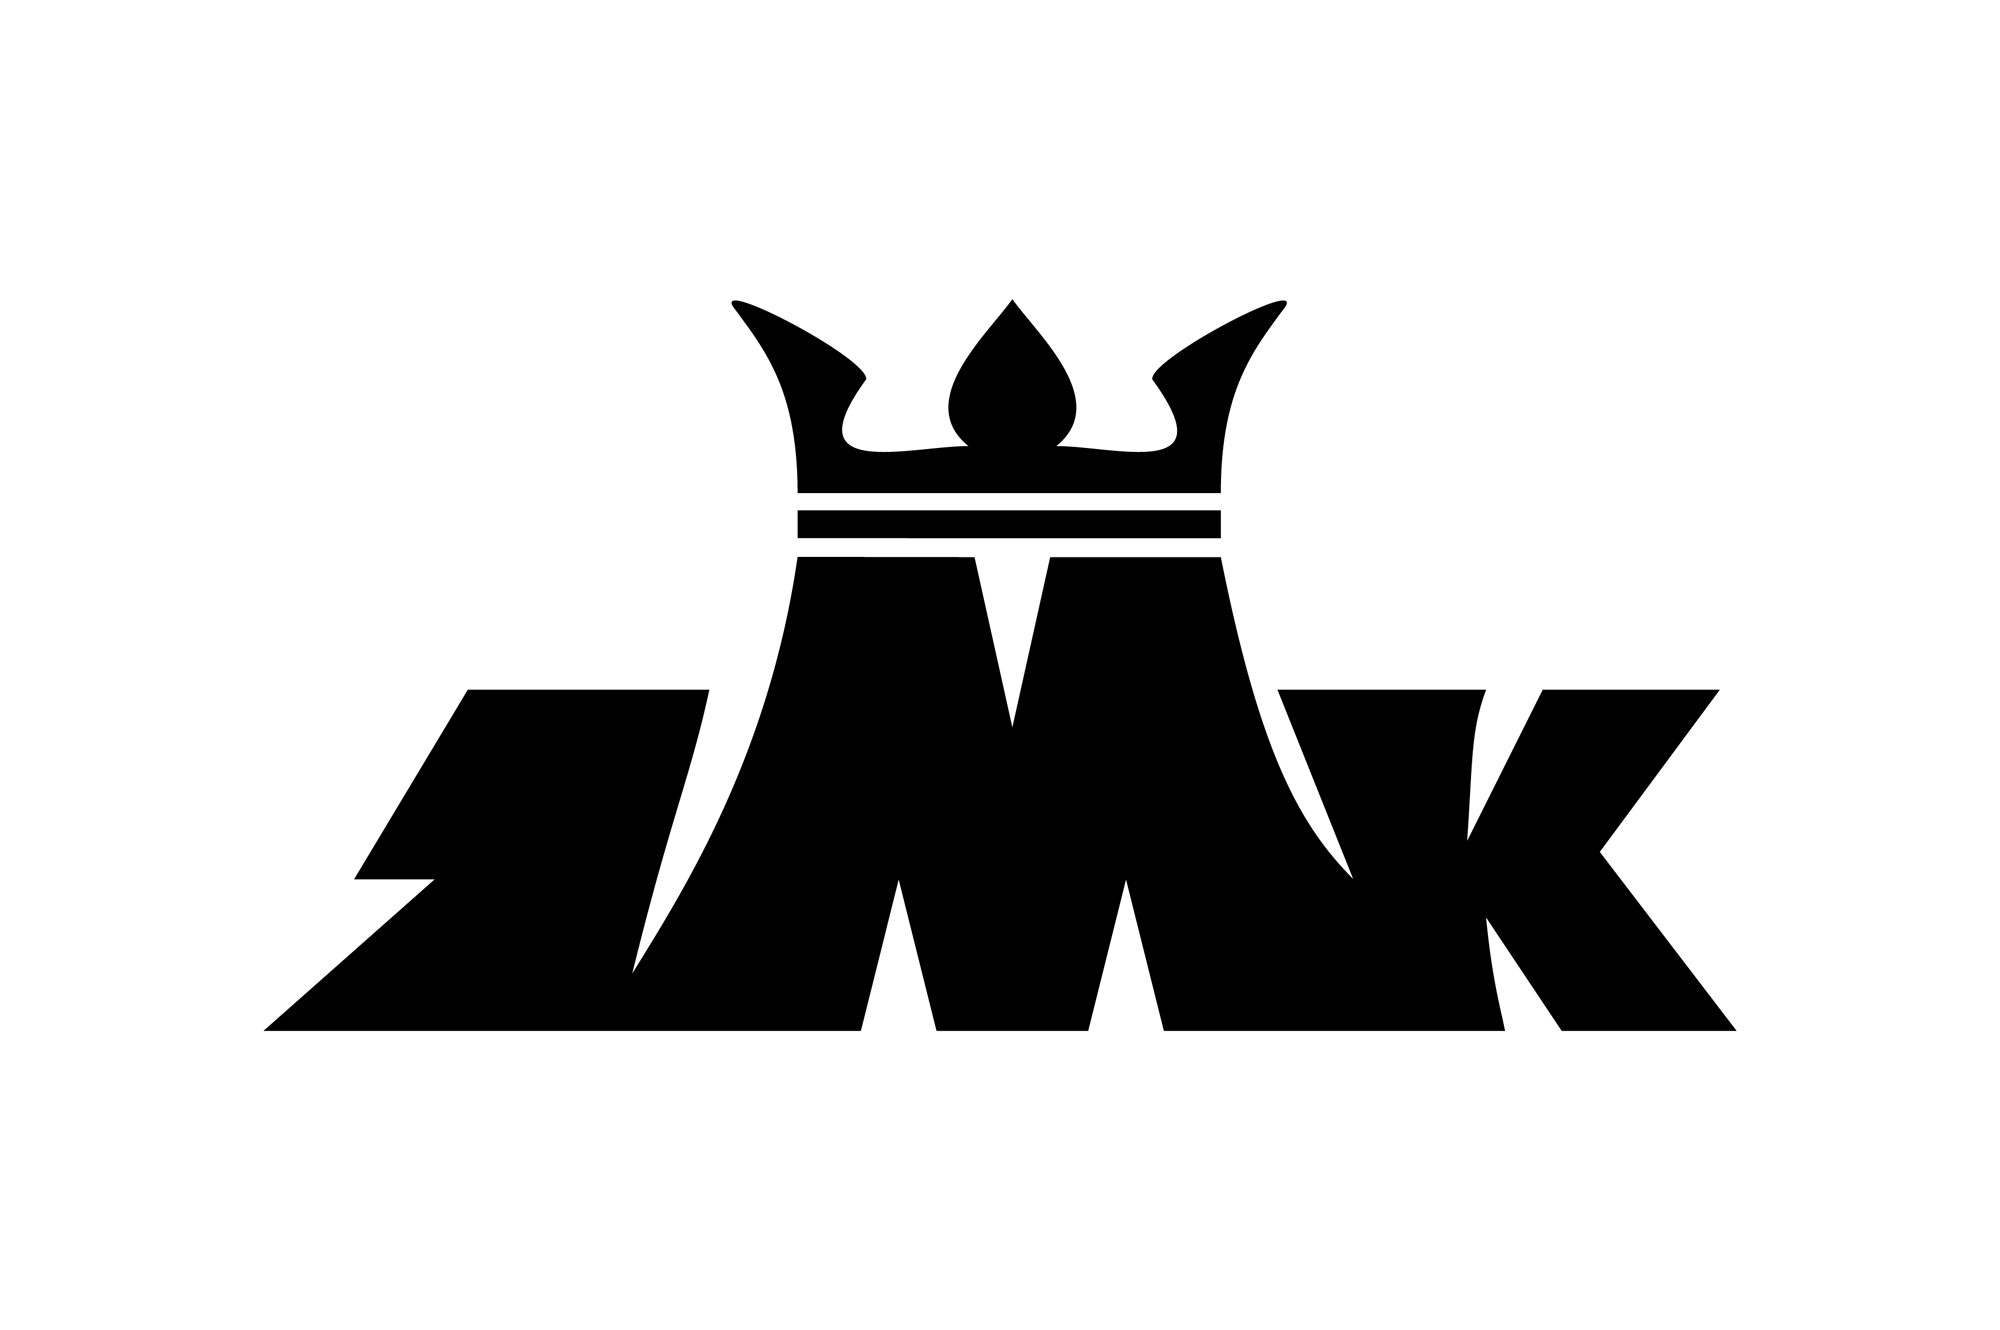 ZMK - logo stare PLANSZA 30x30cm EDYCJA